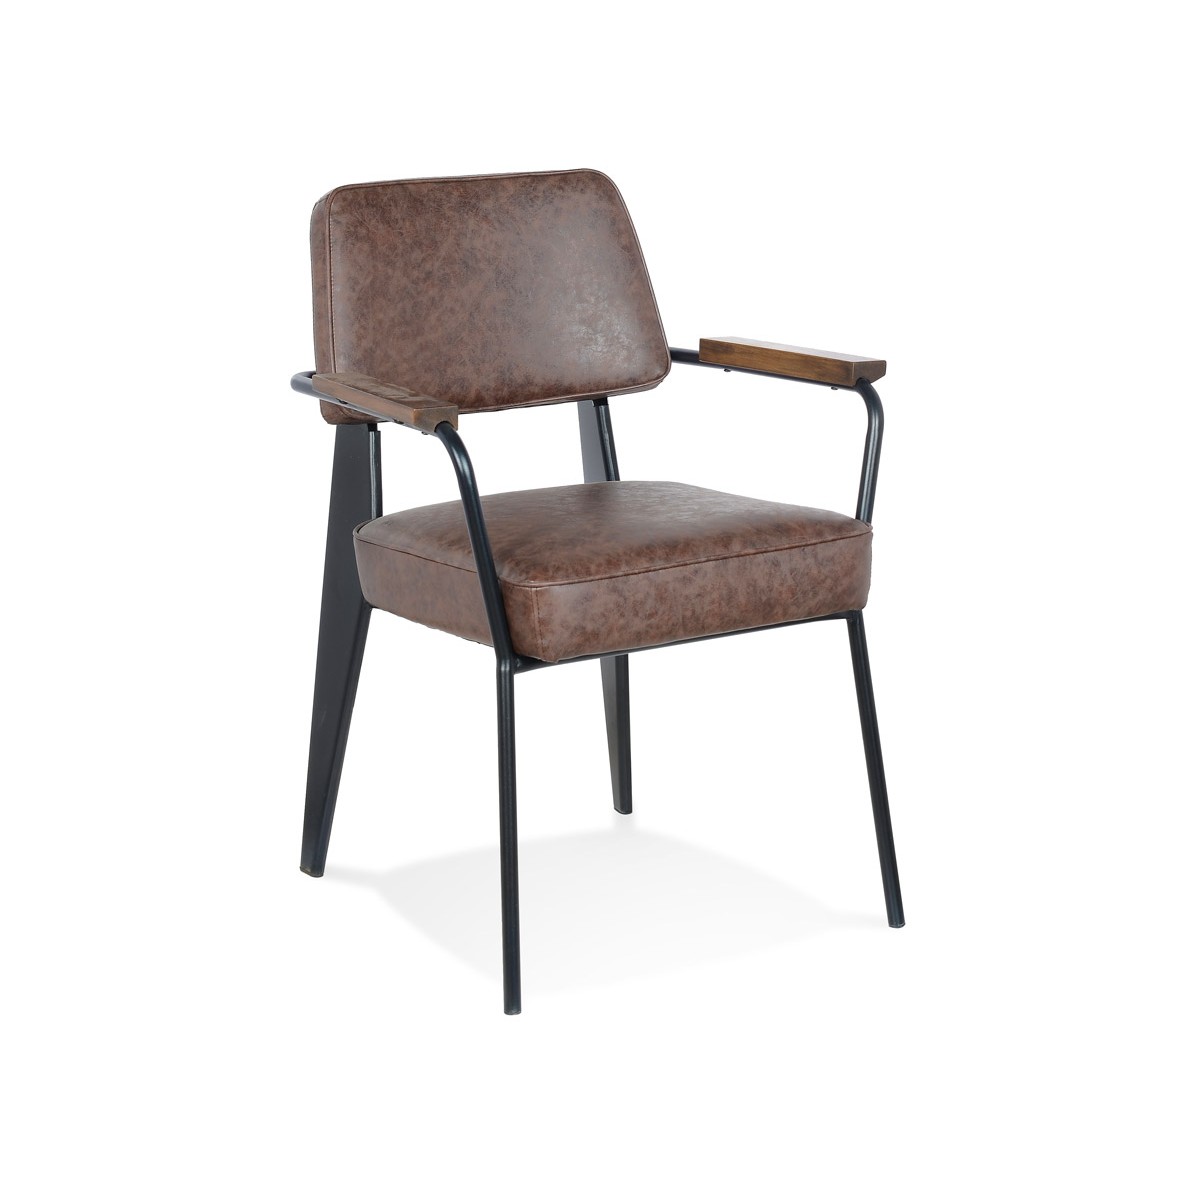 Vintage-Stuhl mit hochwertigen Materialien und schicken Linien